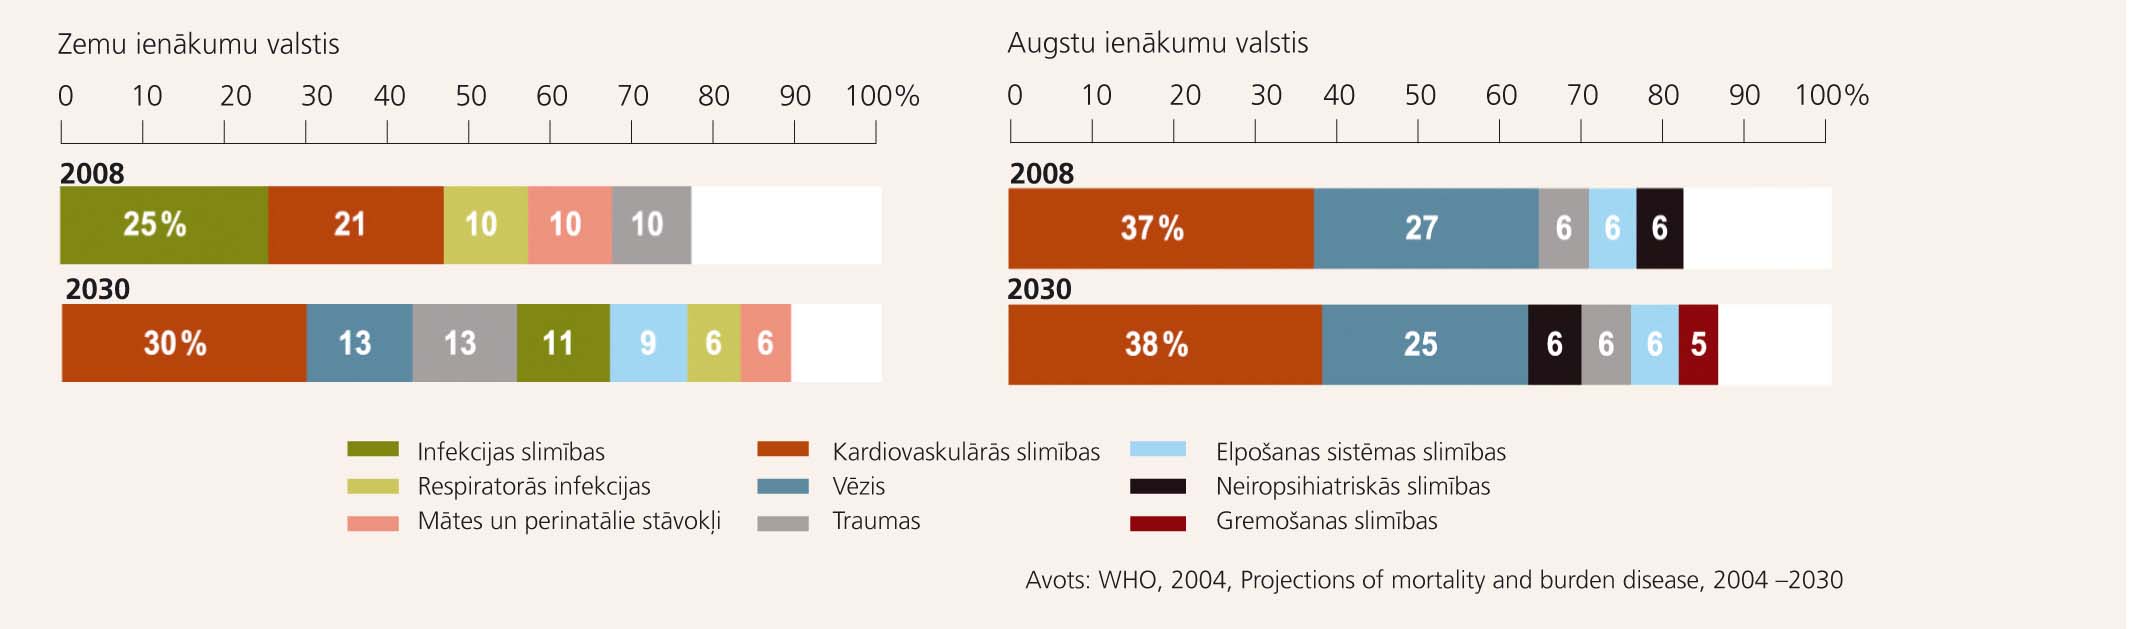 Mirstības cēloņi pasaulē 2008. gadā un 2030. gadā